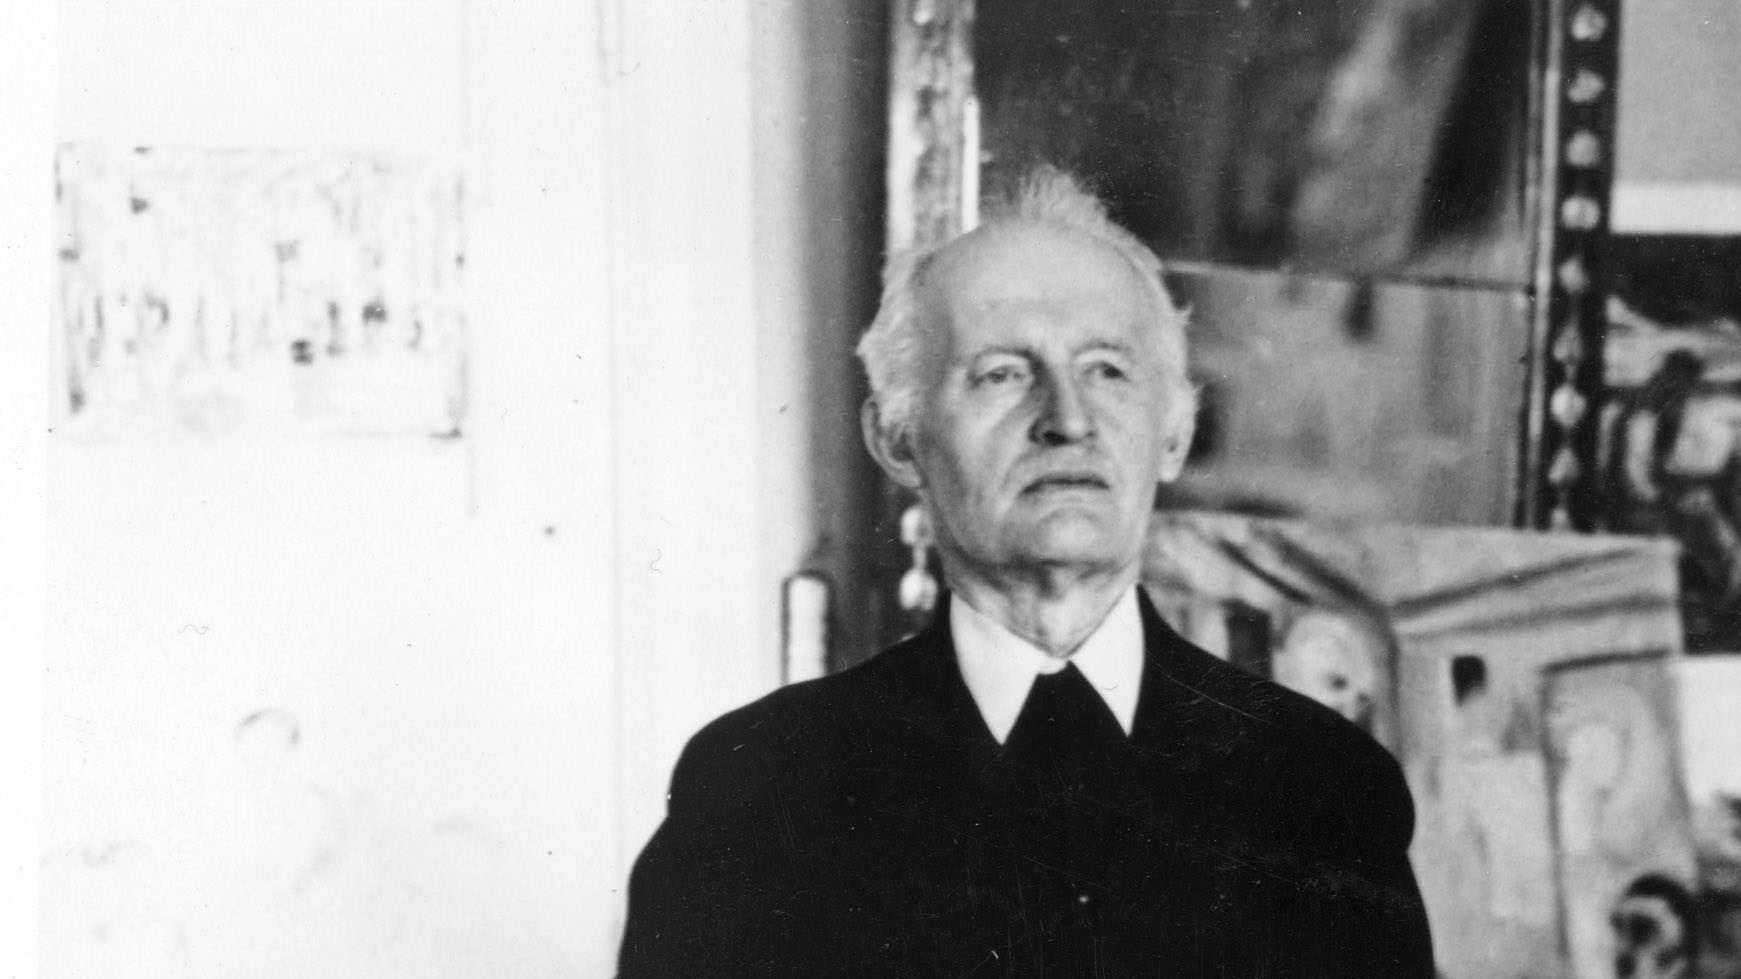 Den världsberömde norske målaren Edvard Munch fotograferad på sin 75-årsdag 1938.